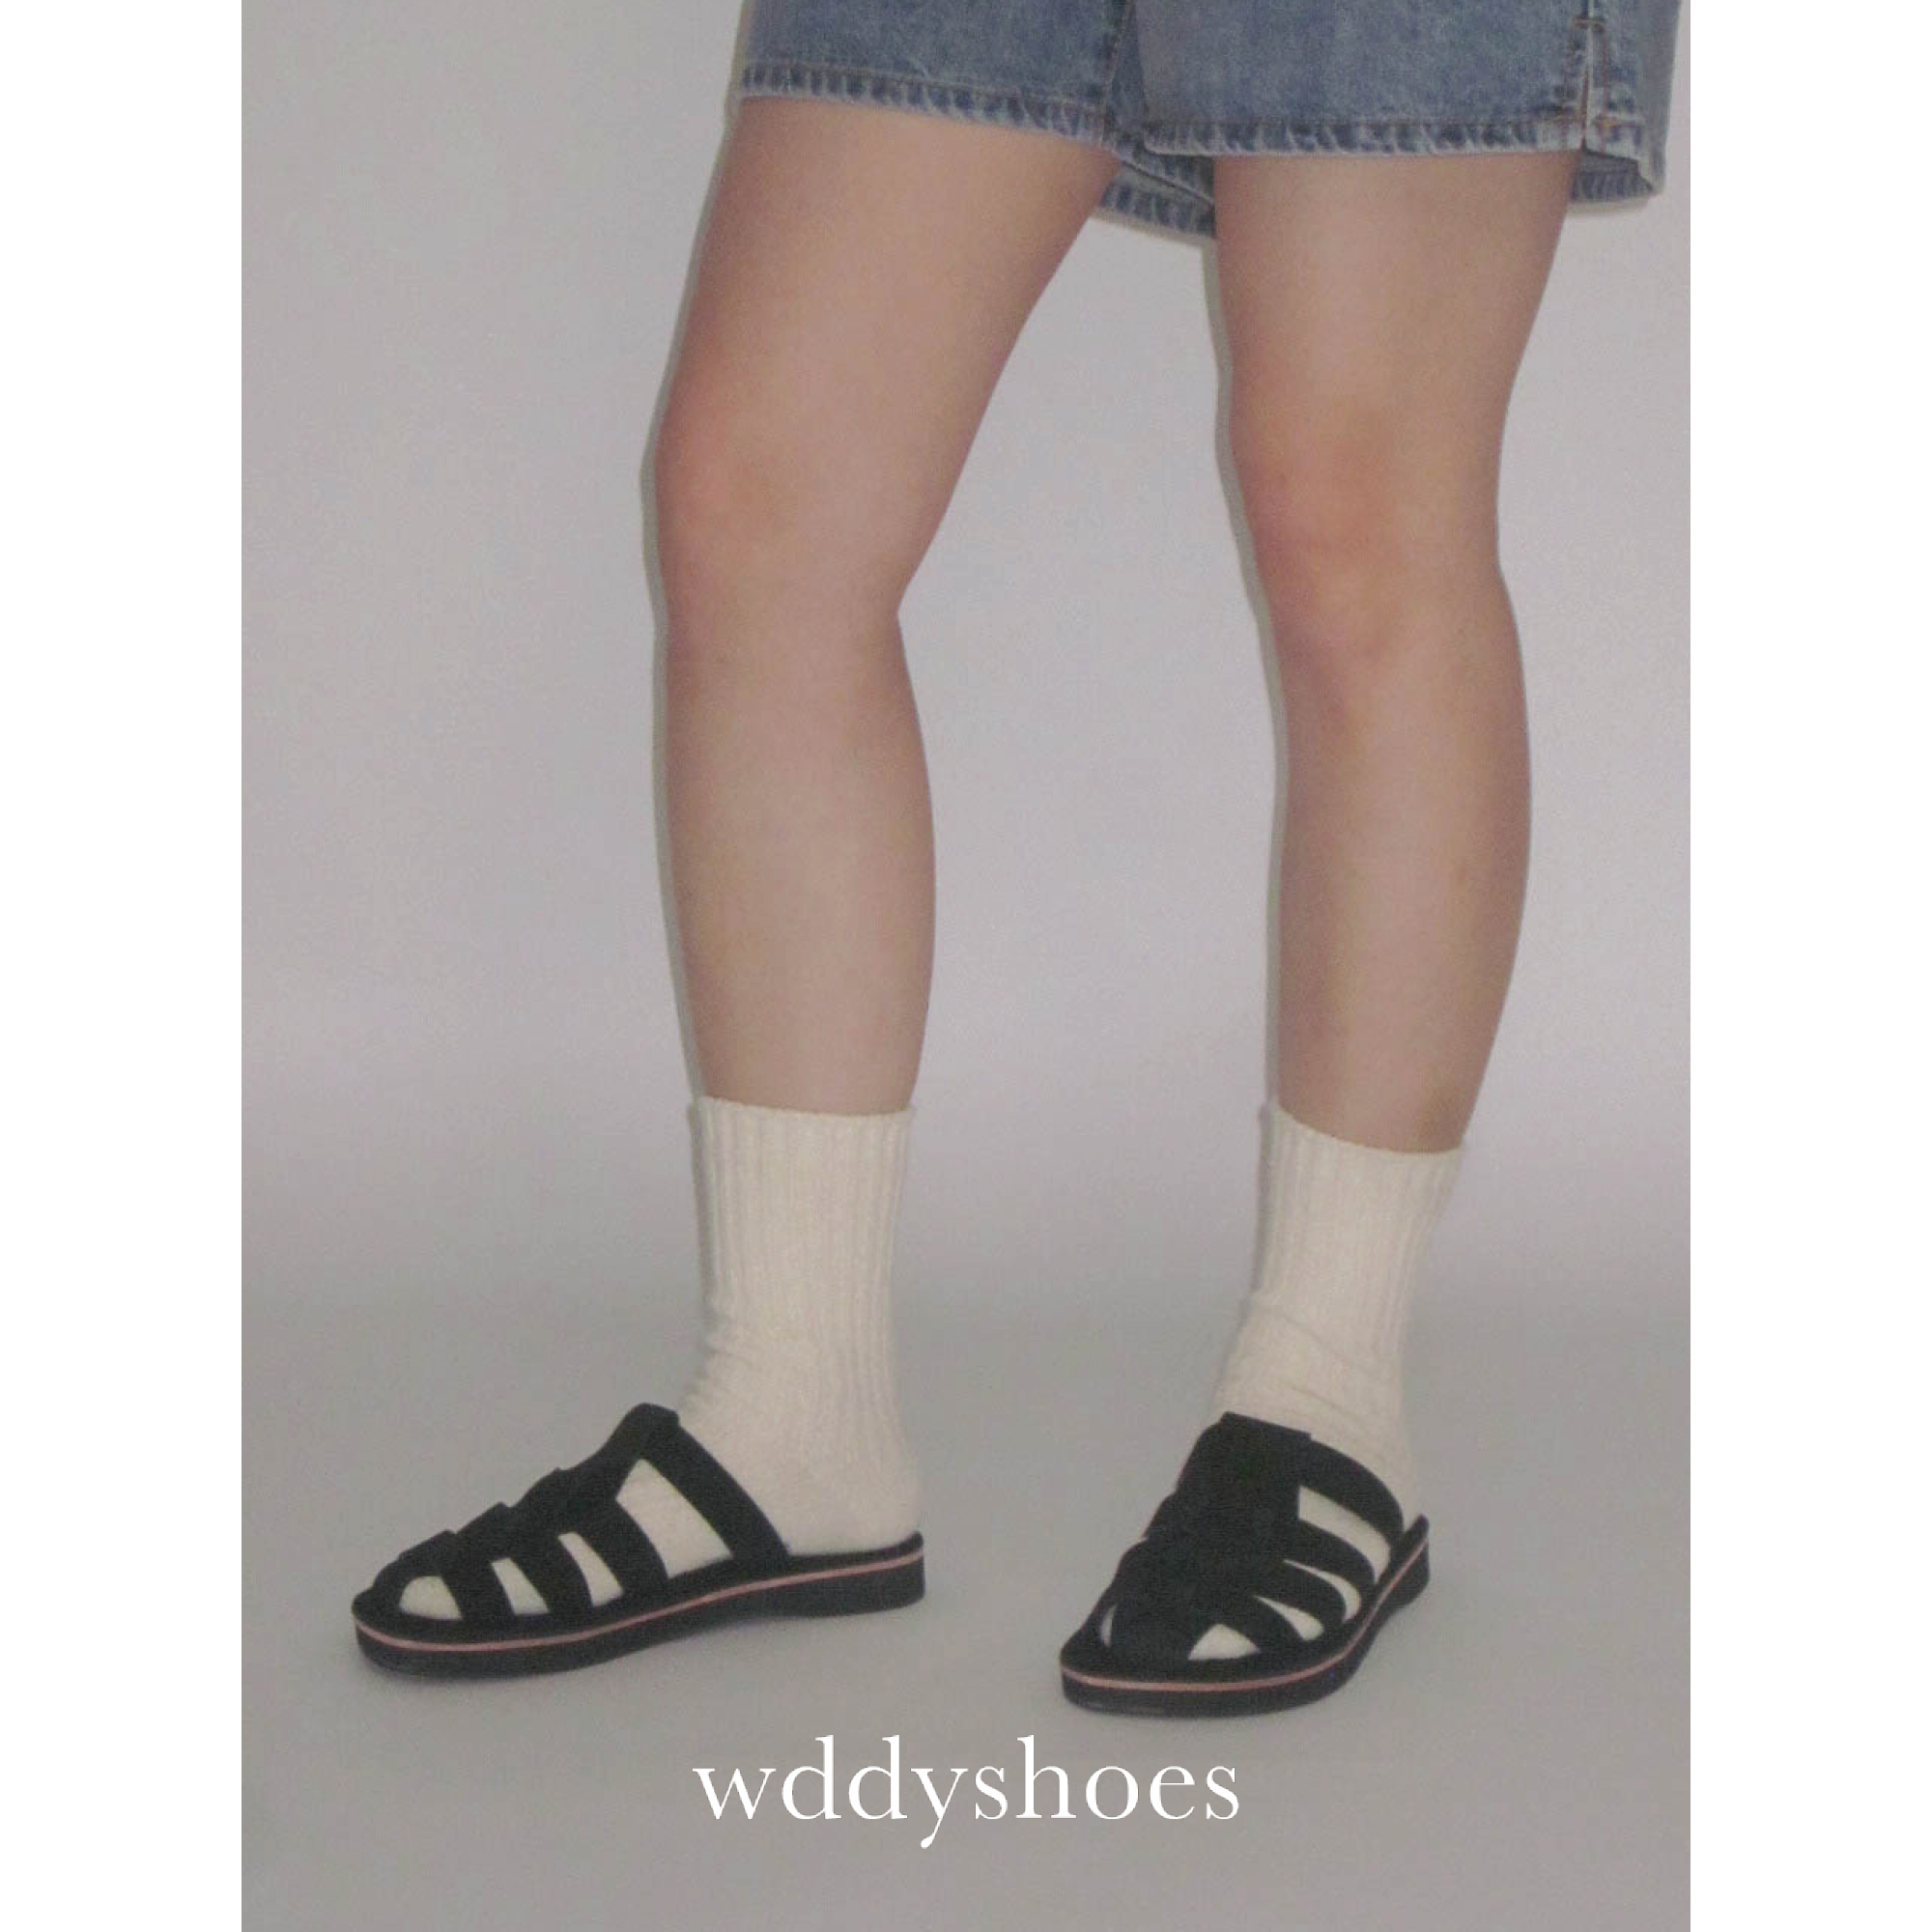 wddyshoes 手工鞋 经典编织夏季休闲日常外穿罗马拖鞋凉鞋 - 图0